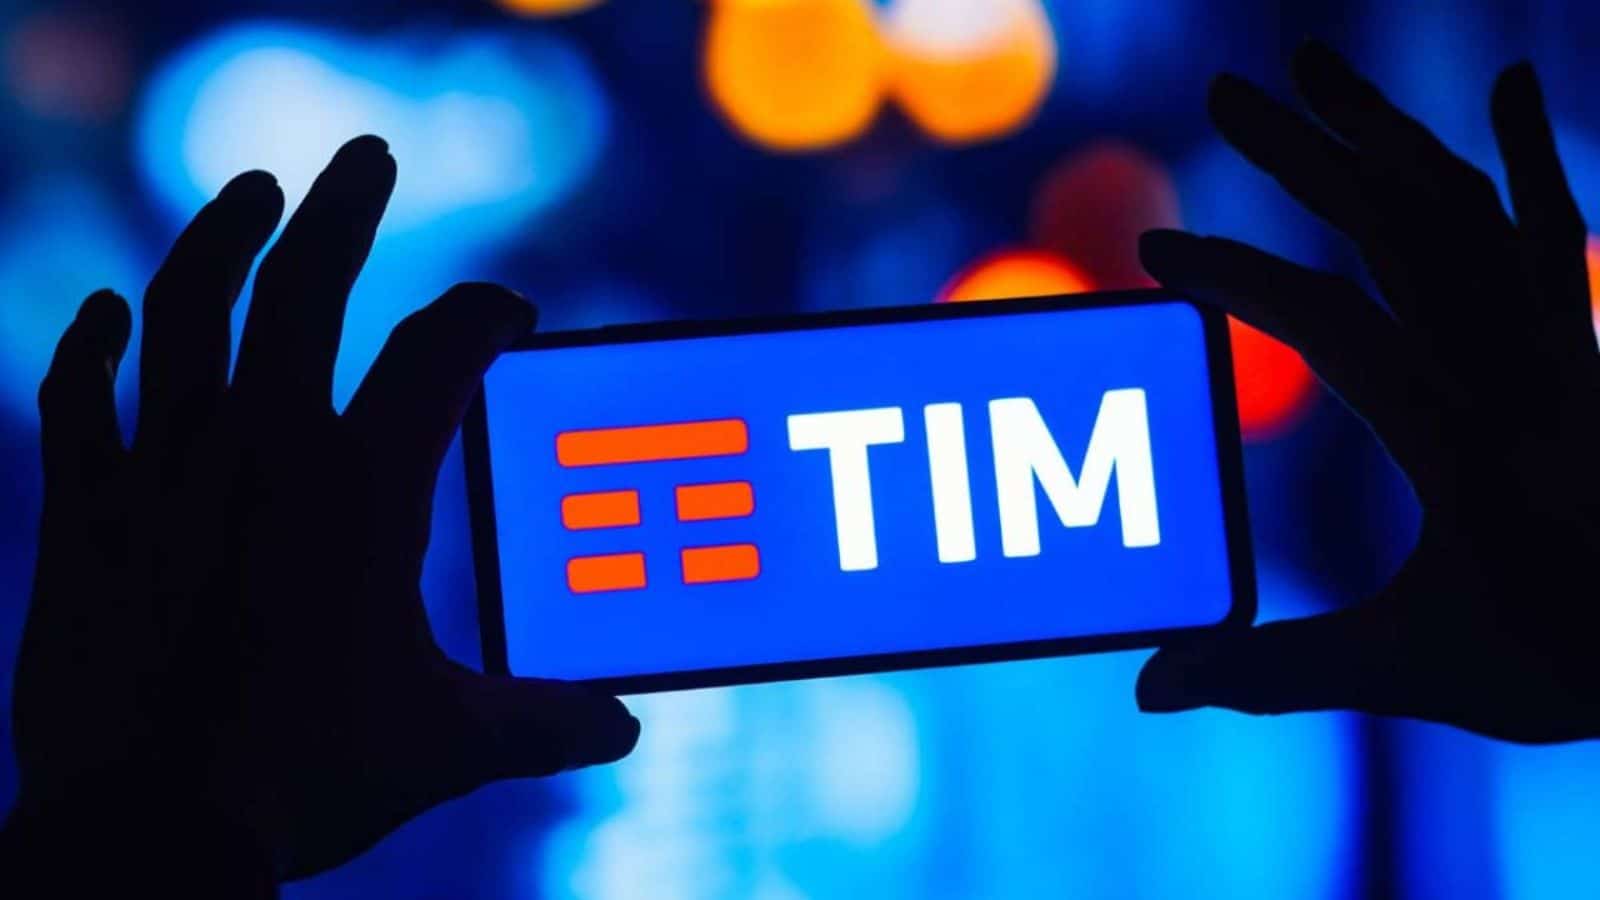 TIM supera Vodafone e Iliad con 3 OFFERTE fino a 300 GIGA in 5G